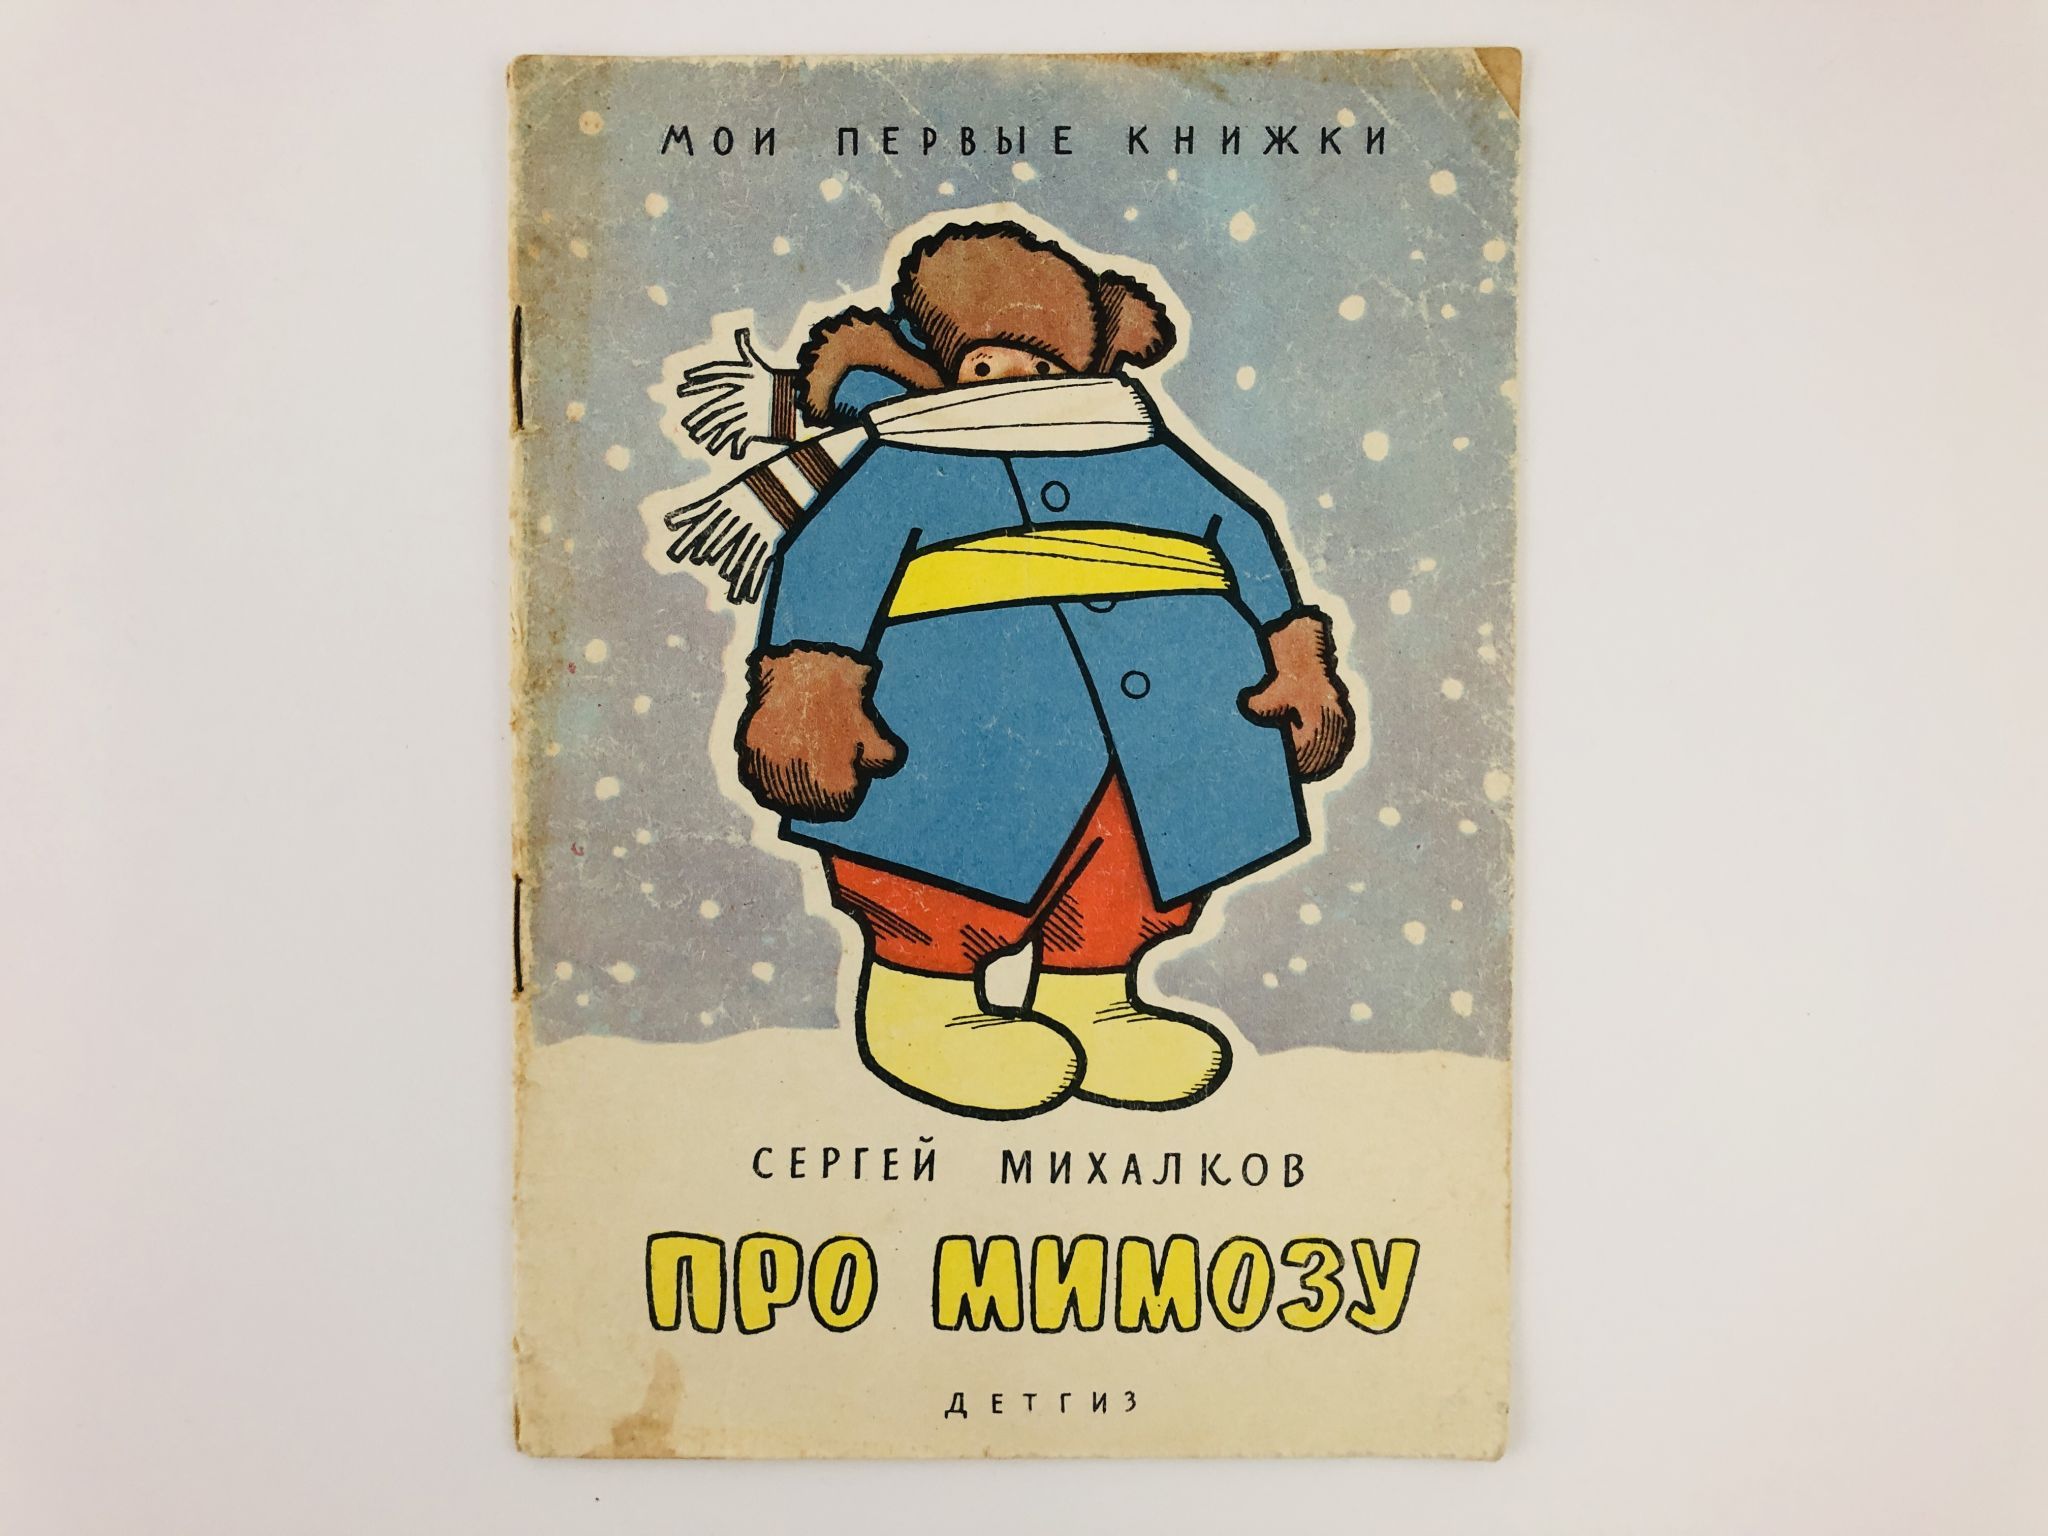 Про мимозу читать. Про мимозу Михалков иллюстрации. Стихотворение про мимозу. Детская книжка про мимозу. Михалков с.в. "про мимозу".